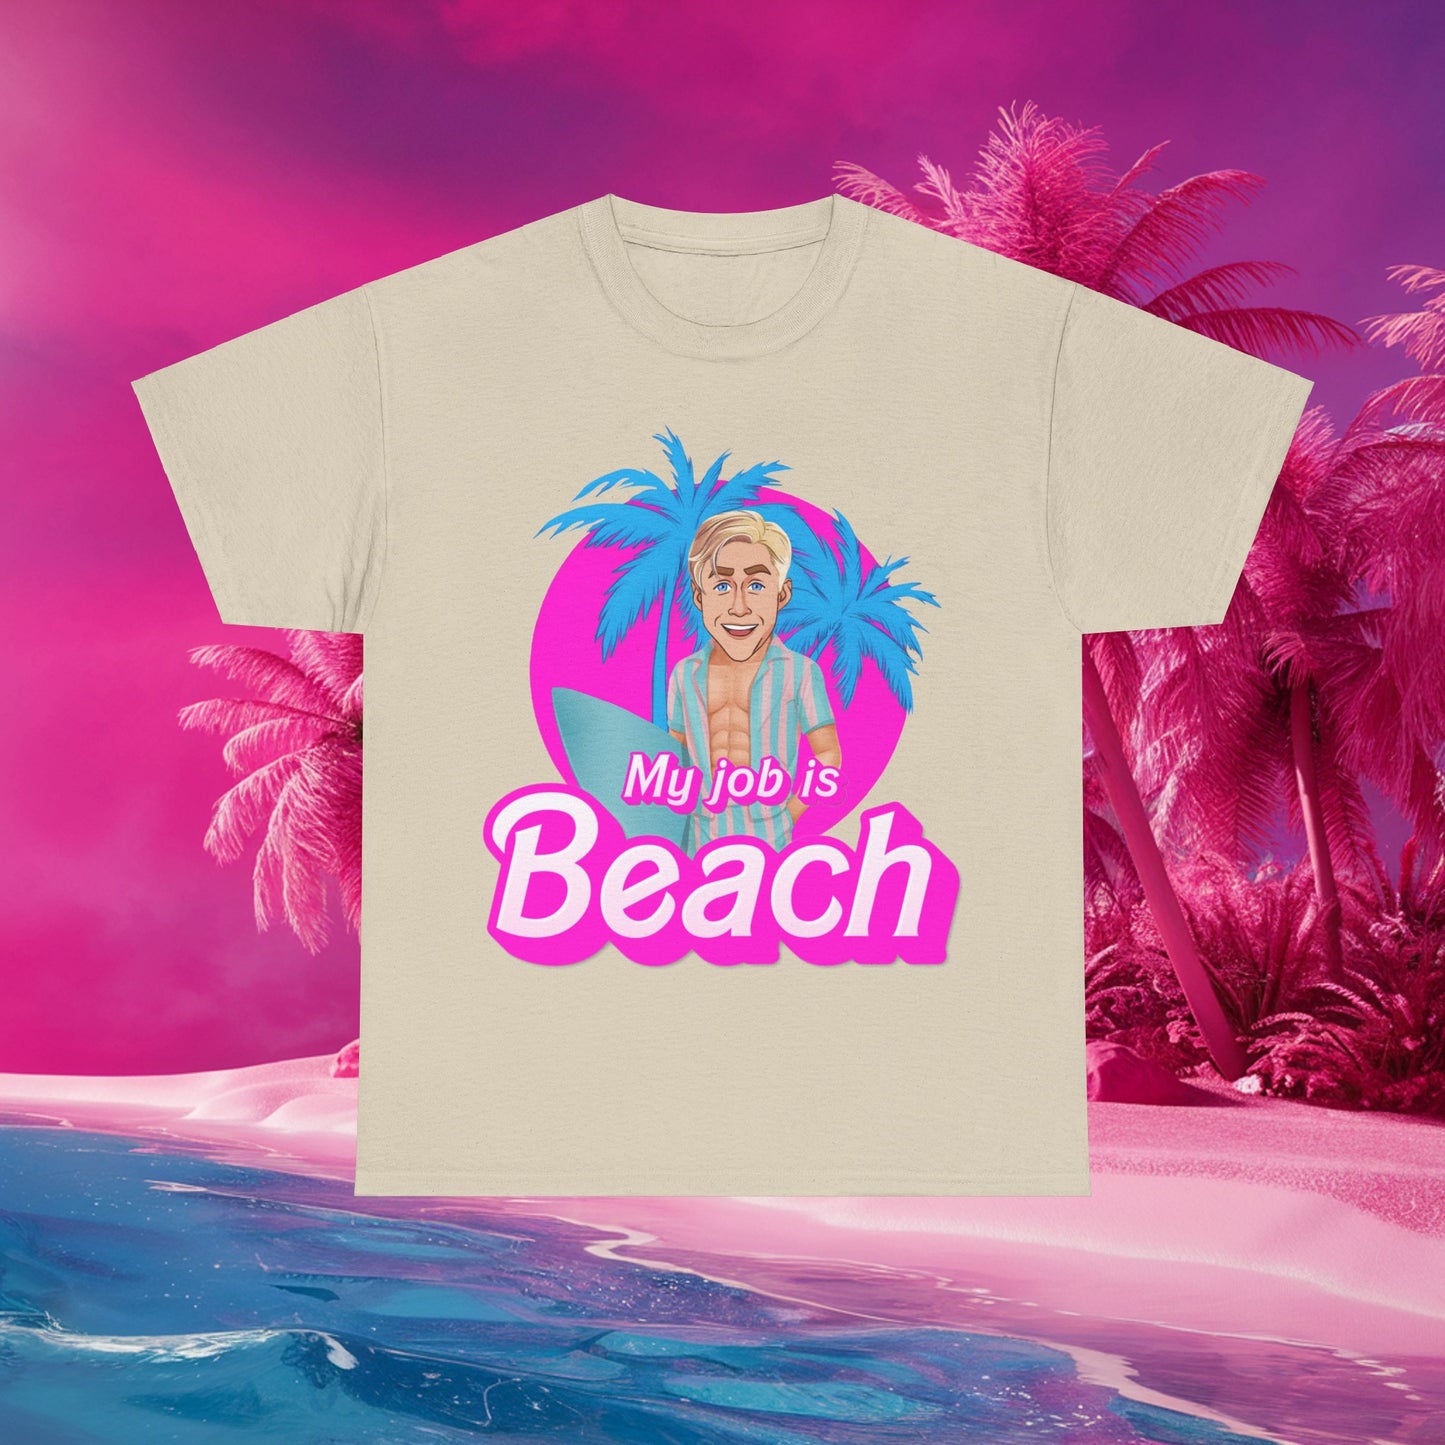 My Job Is Beach Tshirt Ken Shirt Barbie T-shirt Surfing Tee Surf T shirt Summer Shirt Vacation T-Shirt Surfing Gift for Surfer Summer Gift Next Cult Brand